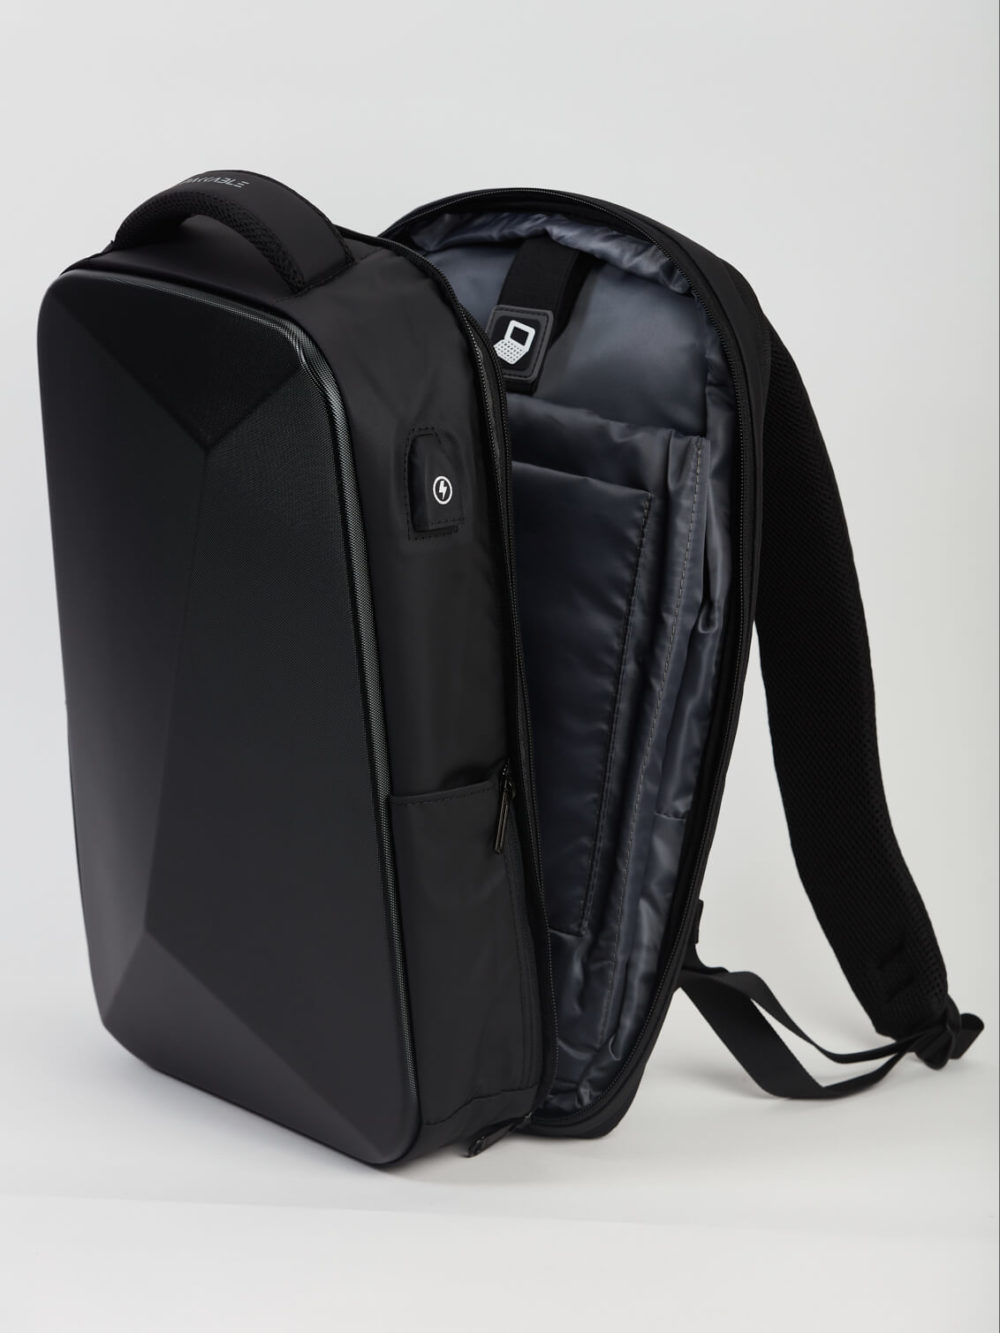 Un sac à dos noir élégant et structuré est partiellement ouvert, révélant un intérieur rembourré. Il est placé sur un simple fond clair.